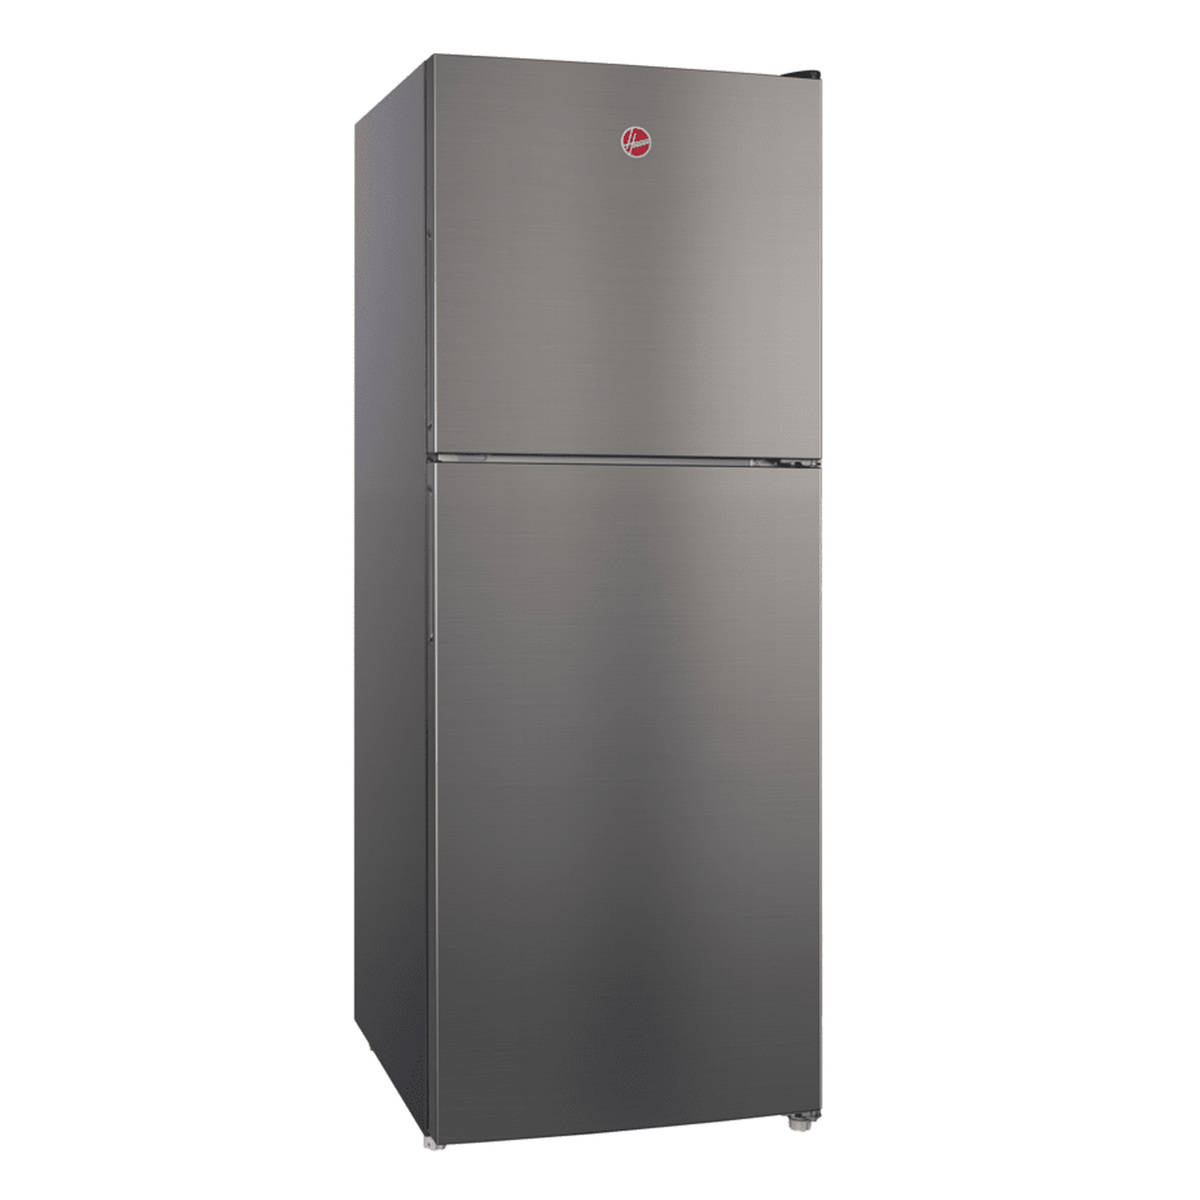 Hoover Double Door Inverter Refrigerator, 260 L, Inox, HTR-M260-S